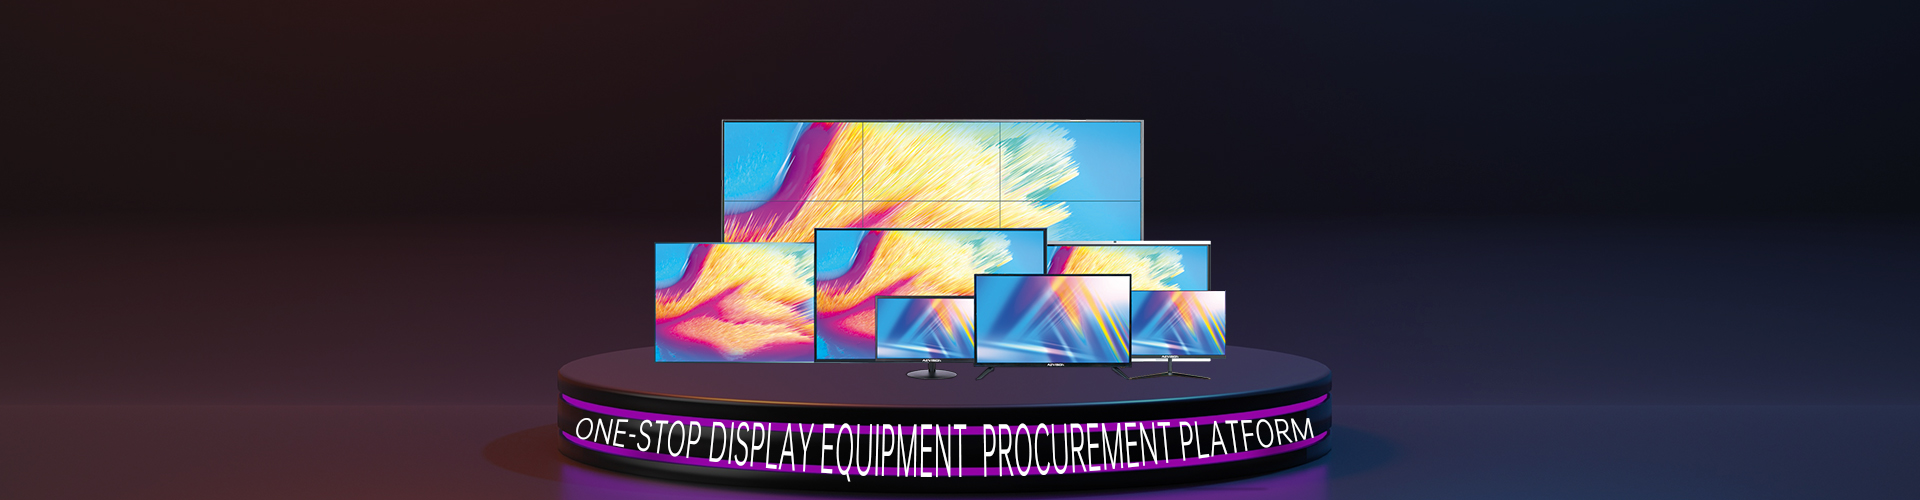 One-stop display equipment procurement platform